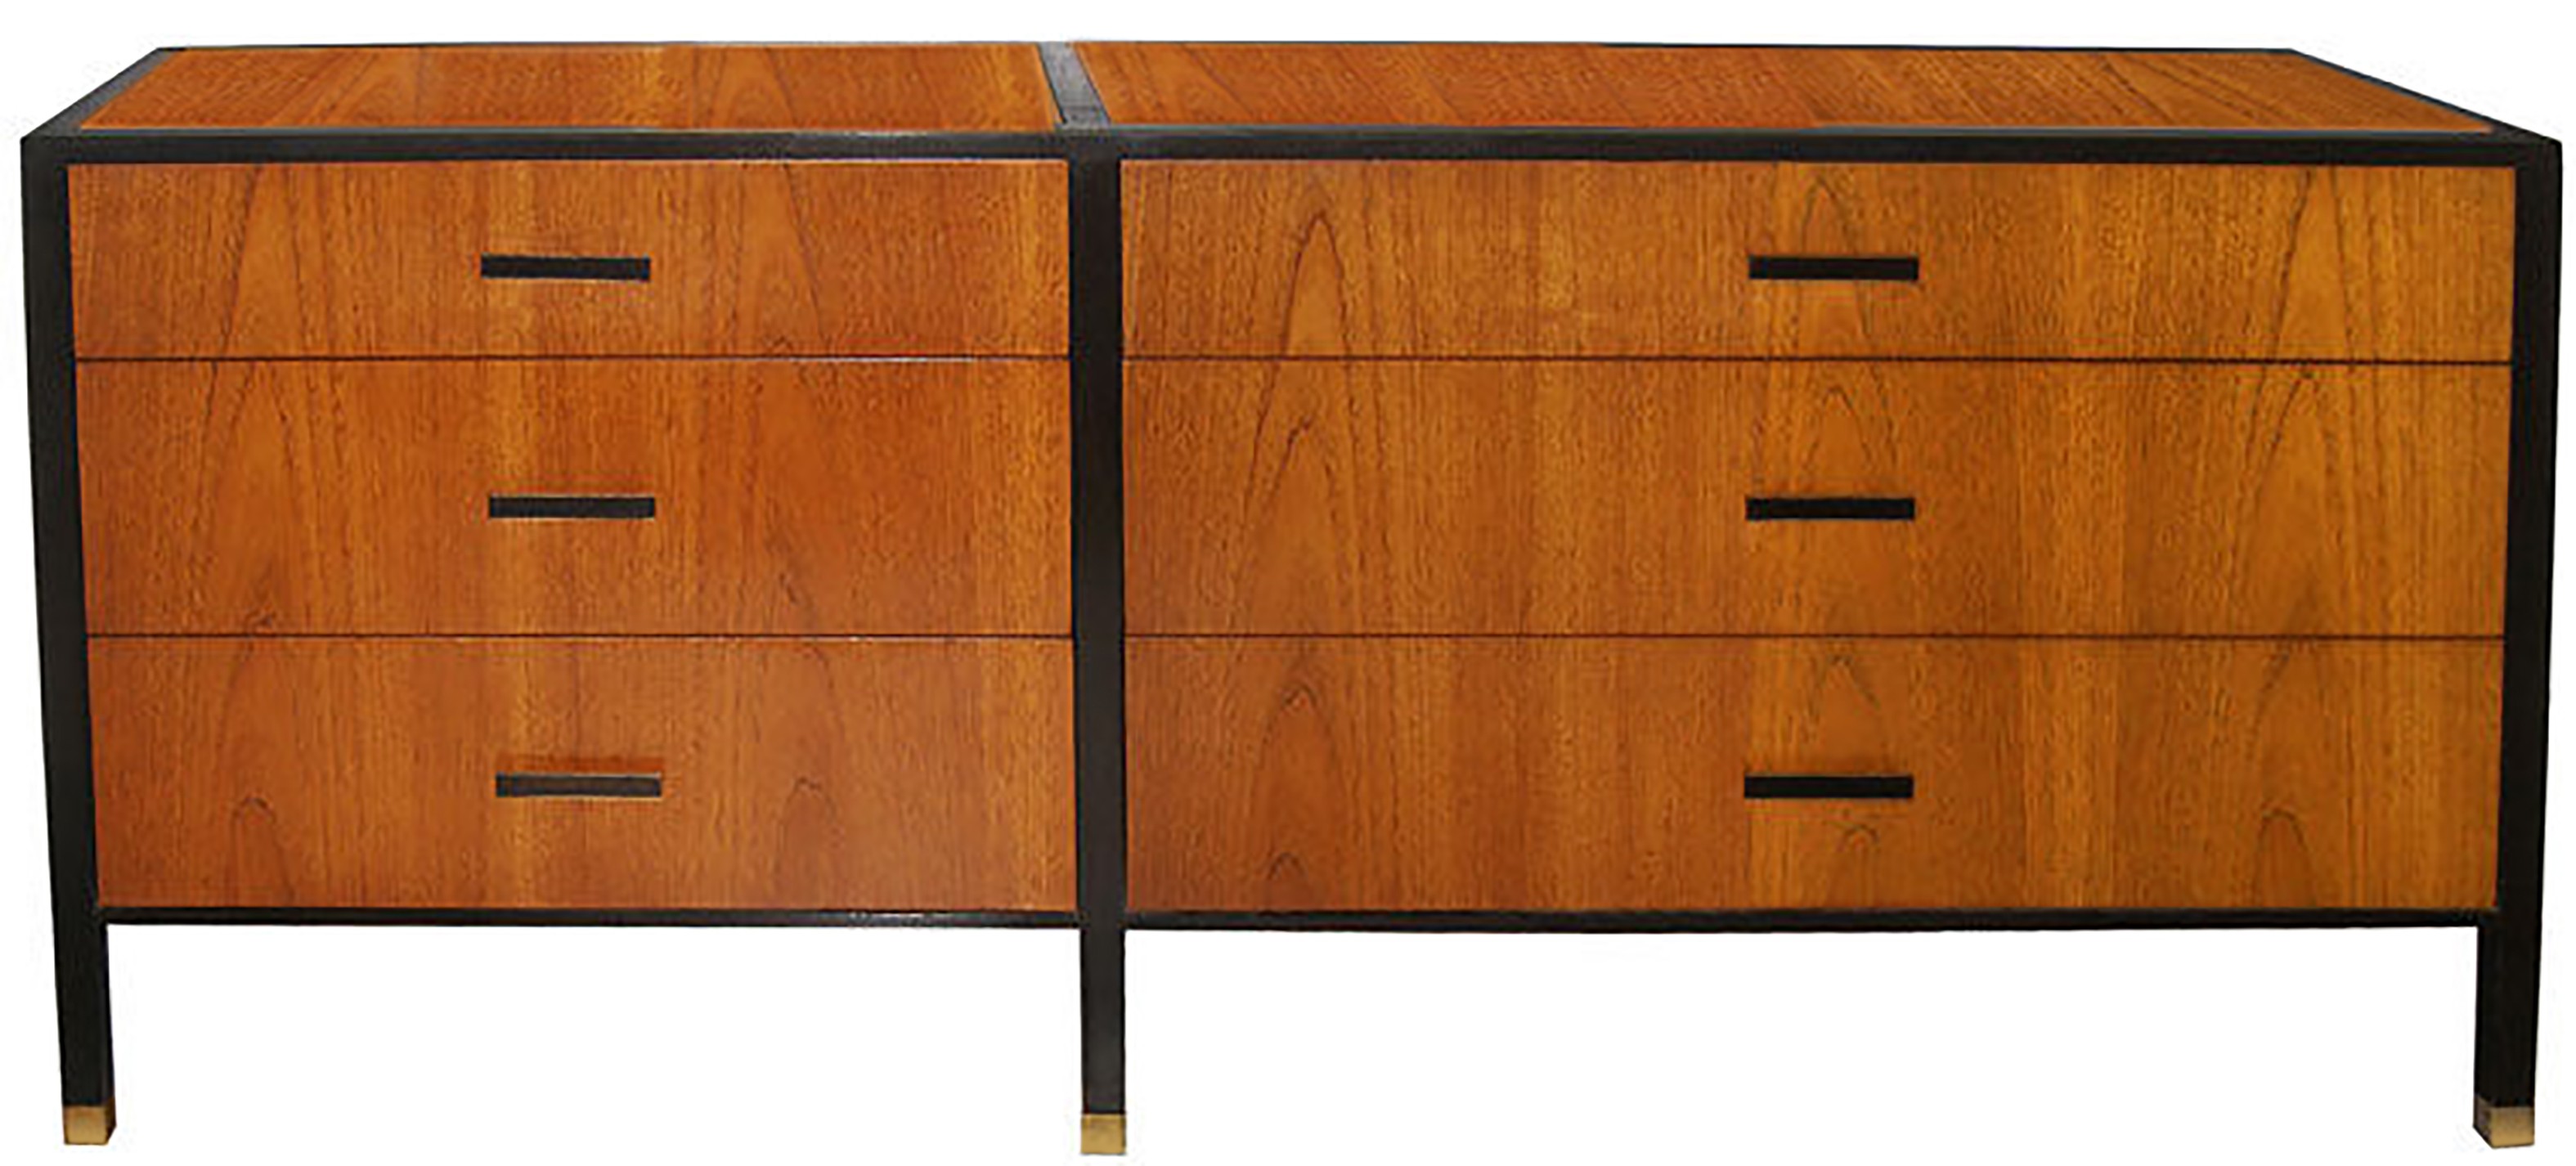 Harvey Probber Dresser in Walnut and Ebonized Mahogany